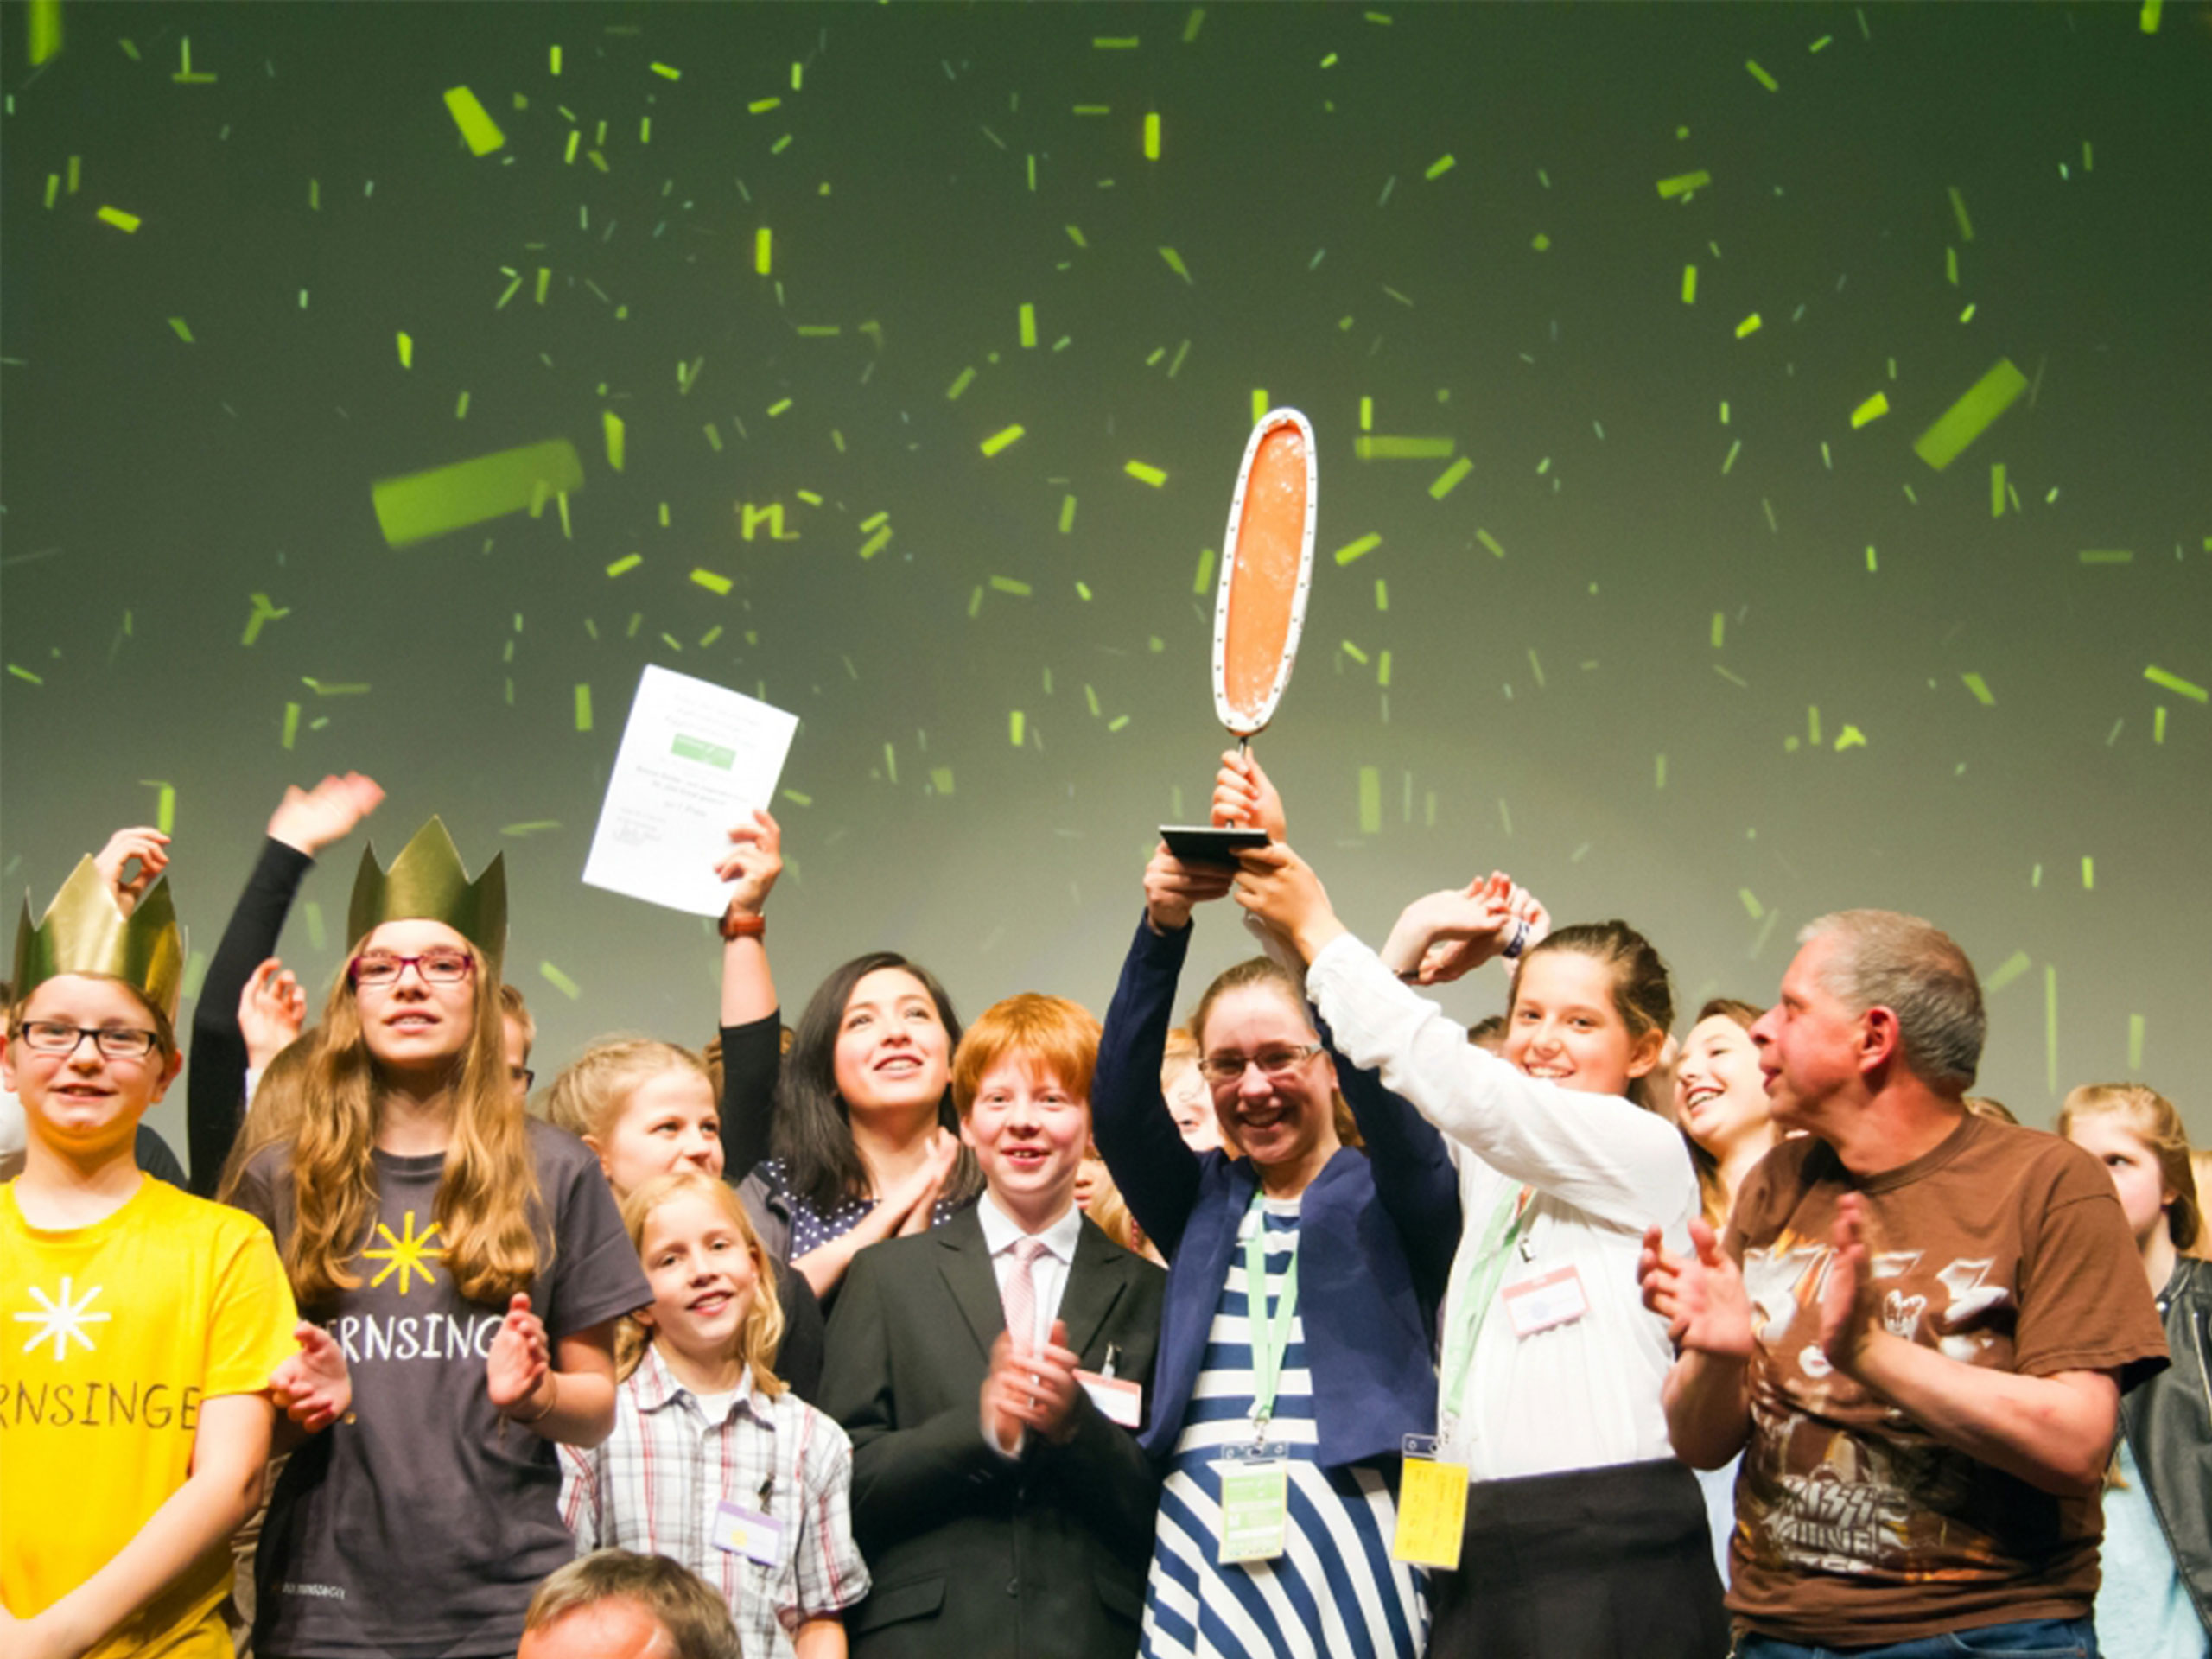 Feiernde Sternsinger-Gruppe, die den Aggiornamento-Preis gewonnen hat, und vor grüner Wand und grünem Konfetti freudestrahlend den Preis hochhalten. 